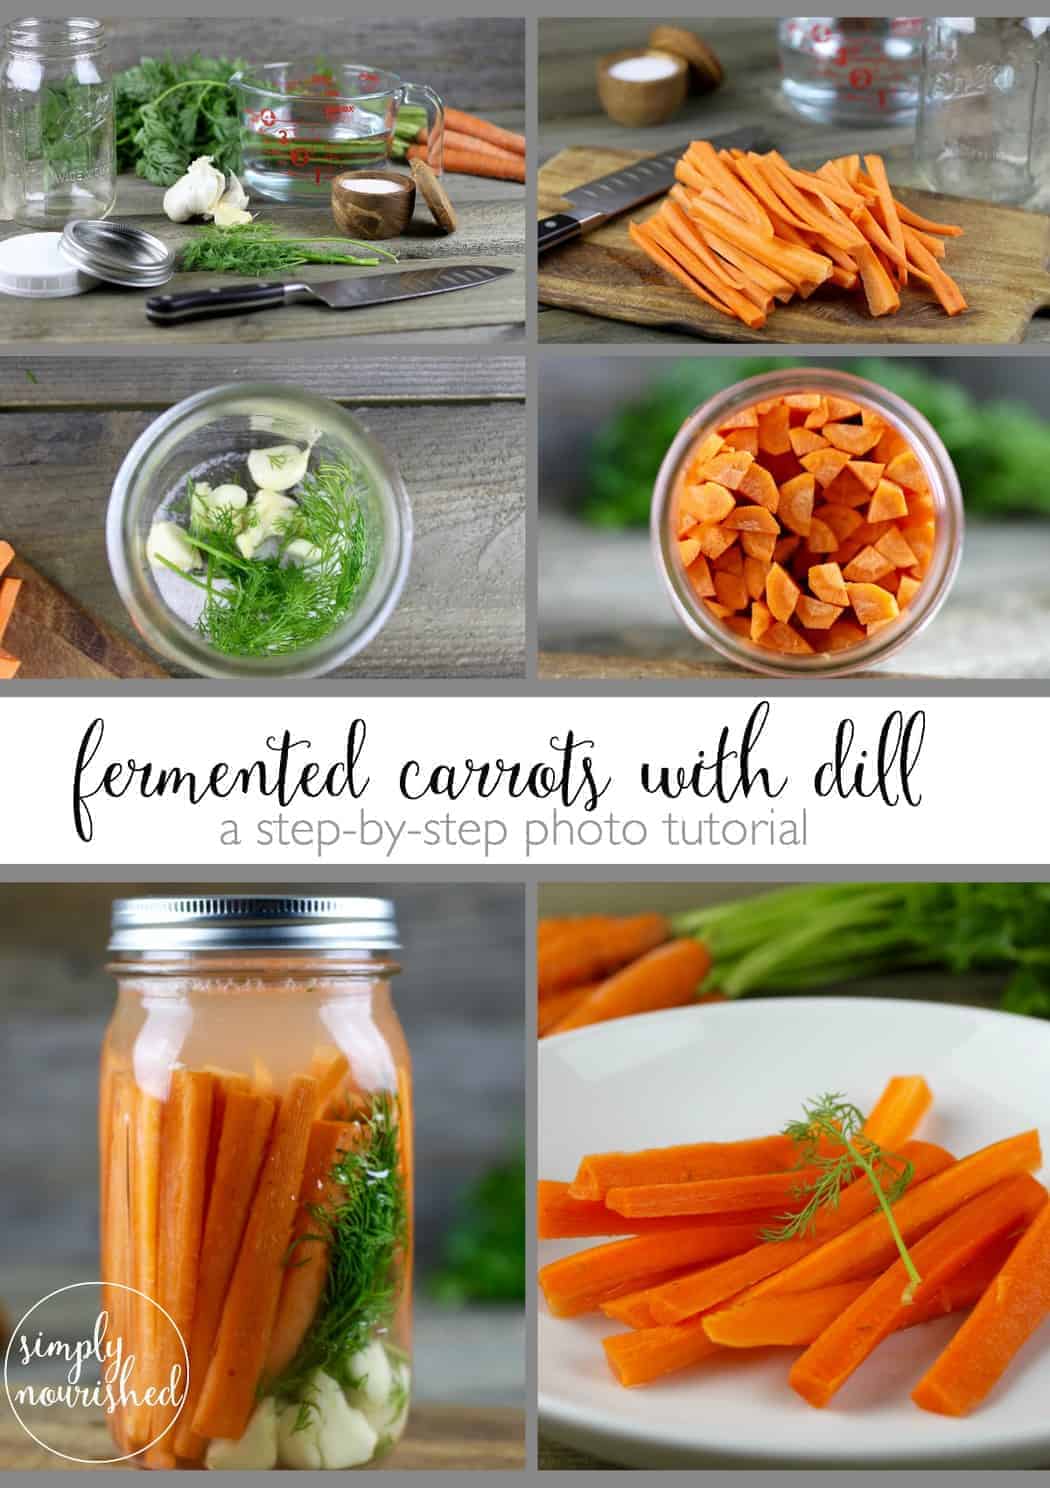  Gefermenteerde wortelen met Dille | Het fermenteren van voedsel is een oude conserveringsmethode en biedt ook een groot aantal voedingsvoordelen. Geef je immuunsysteem en darmgezondheid een boost met dit eenvoudige recept 